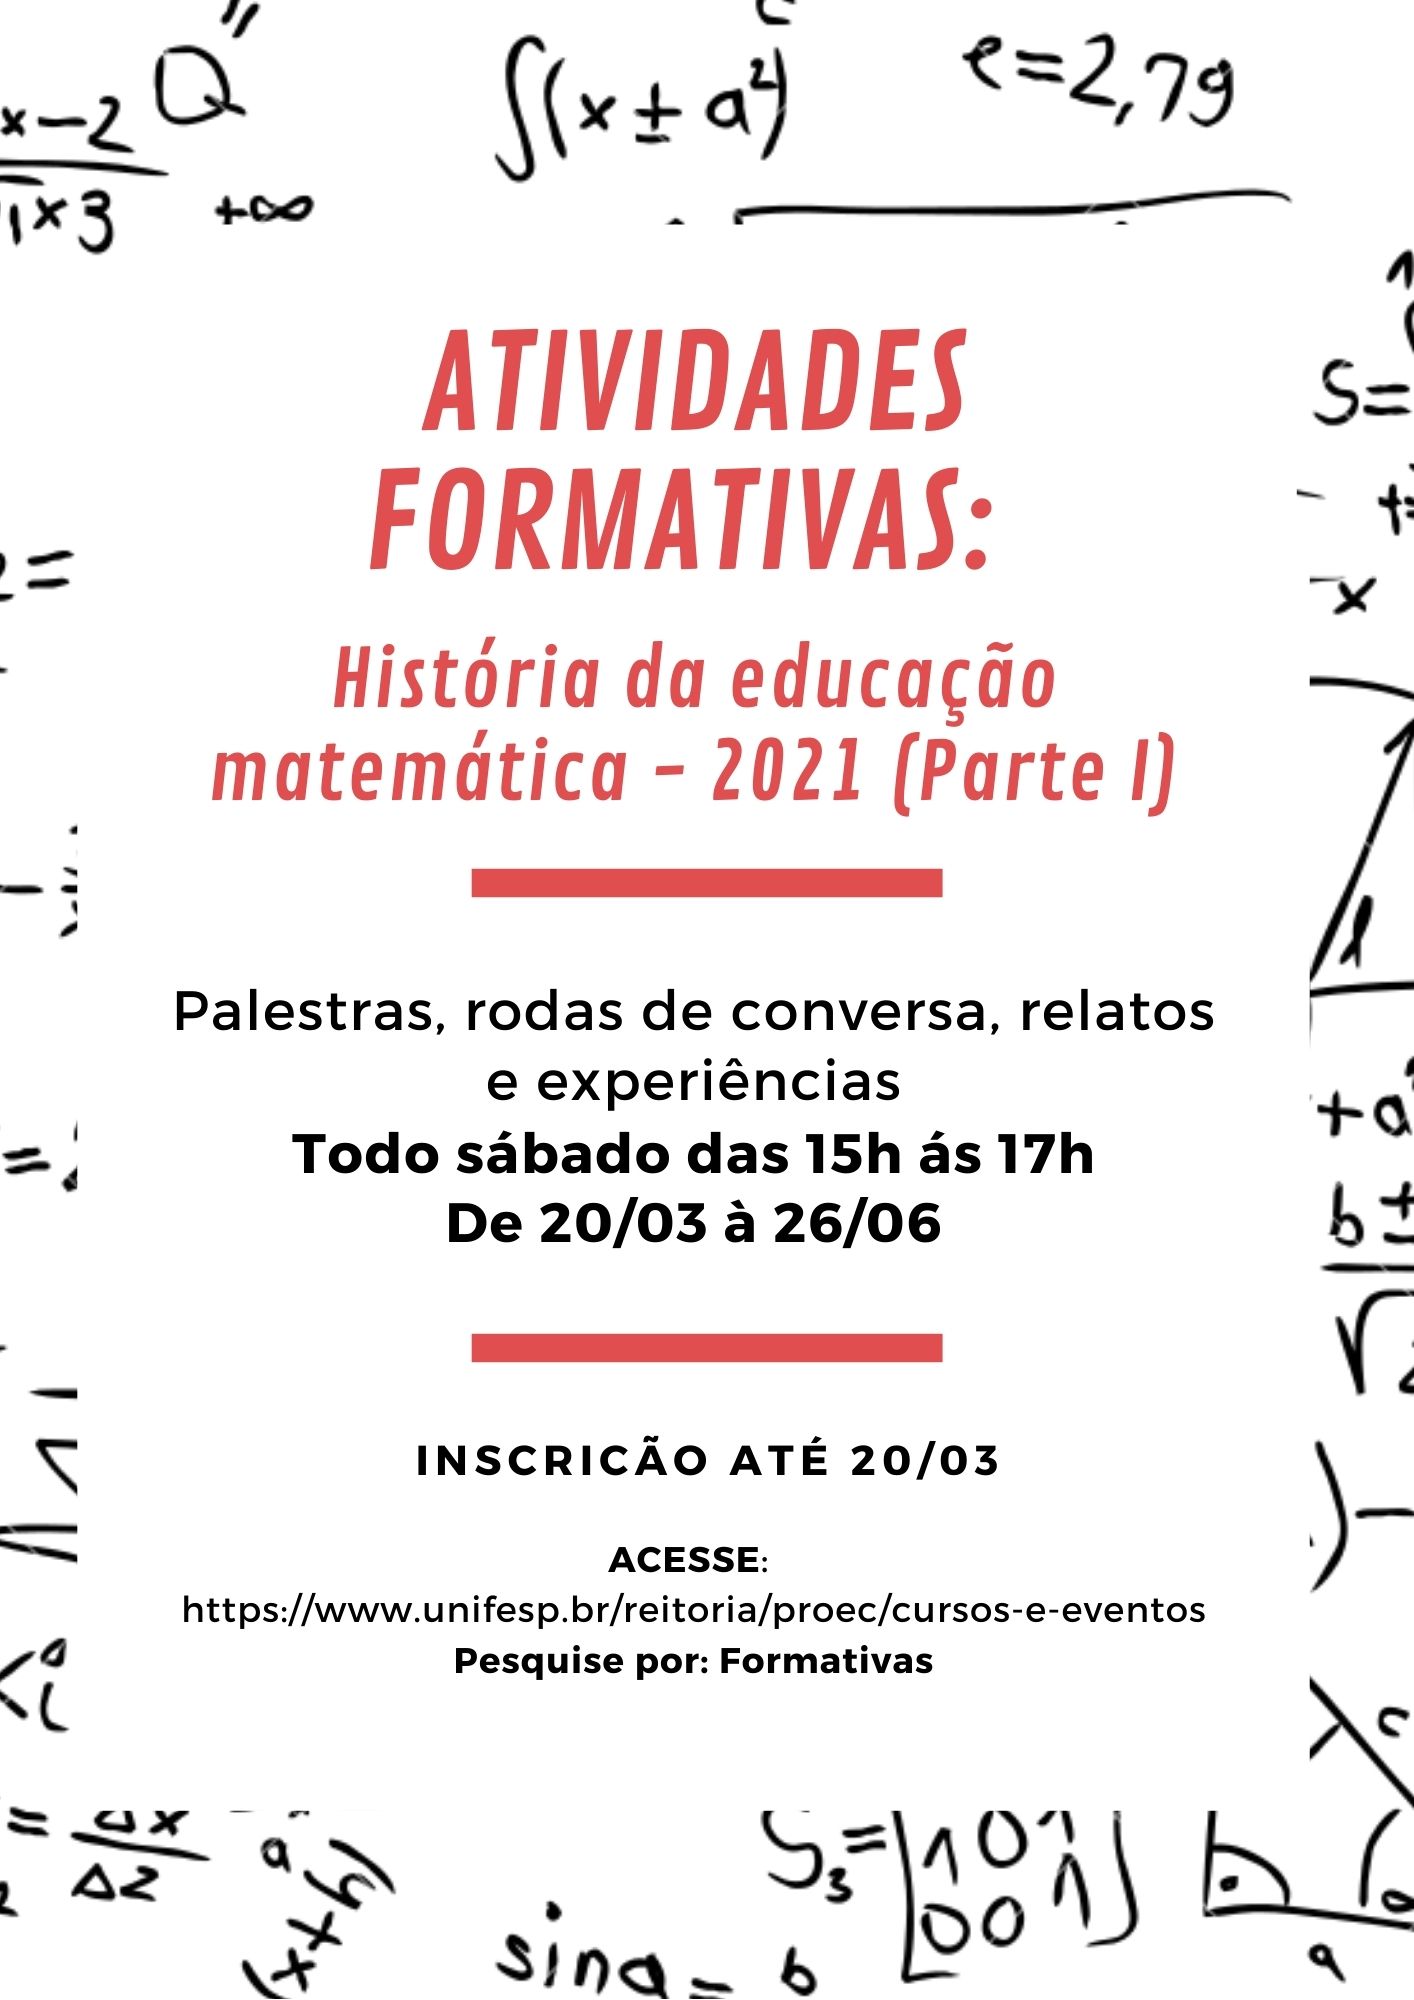 ATIVIDADES FORMATIVAS HistÓria da educação matemática 2021 Parte I